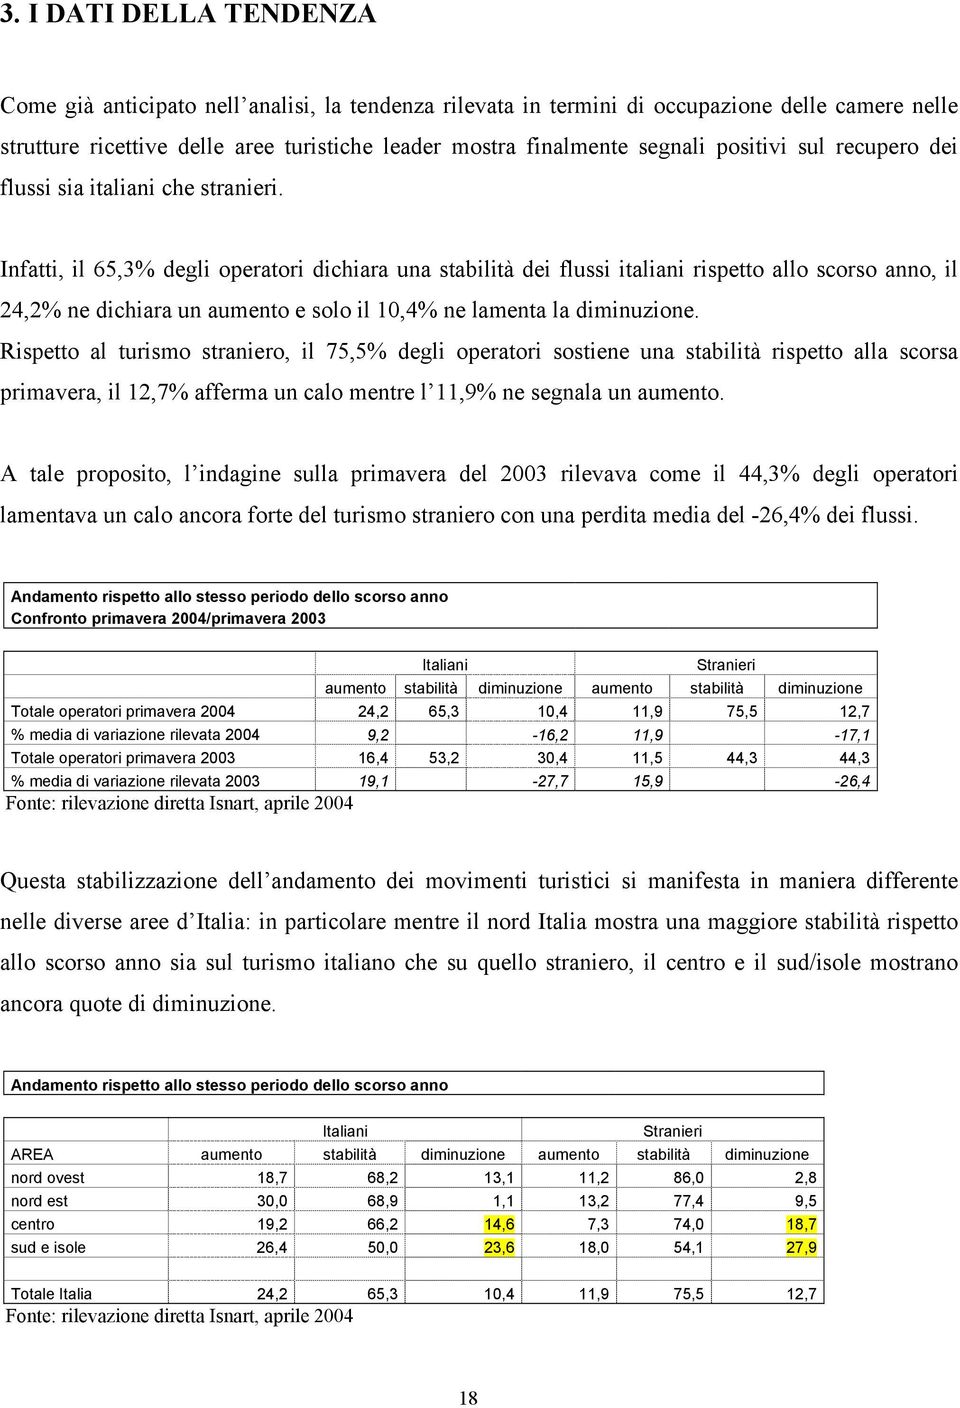 Infatti, il 65,3% degli operatori dichiara una stabilità dei flussi italiani rispetto allo scorso anno, il 24,2% ne dichiara un aumento e solo il 10,4% ne lamenta la diminuzione.